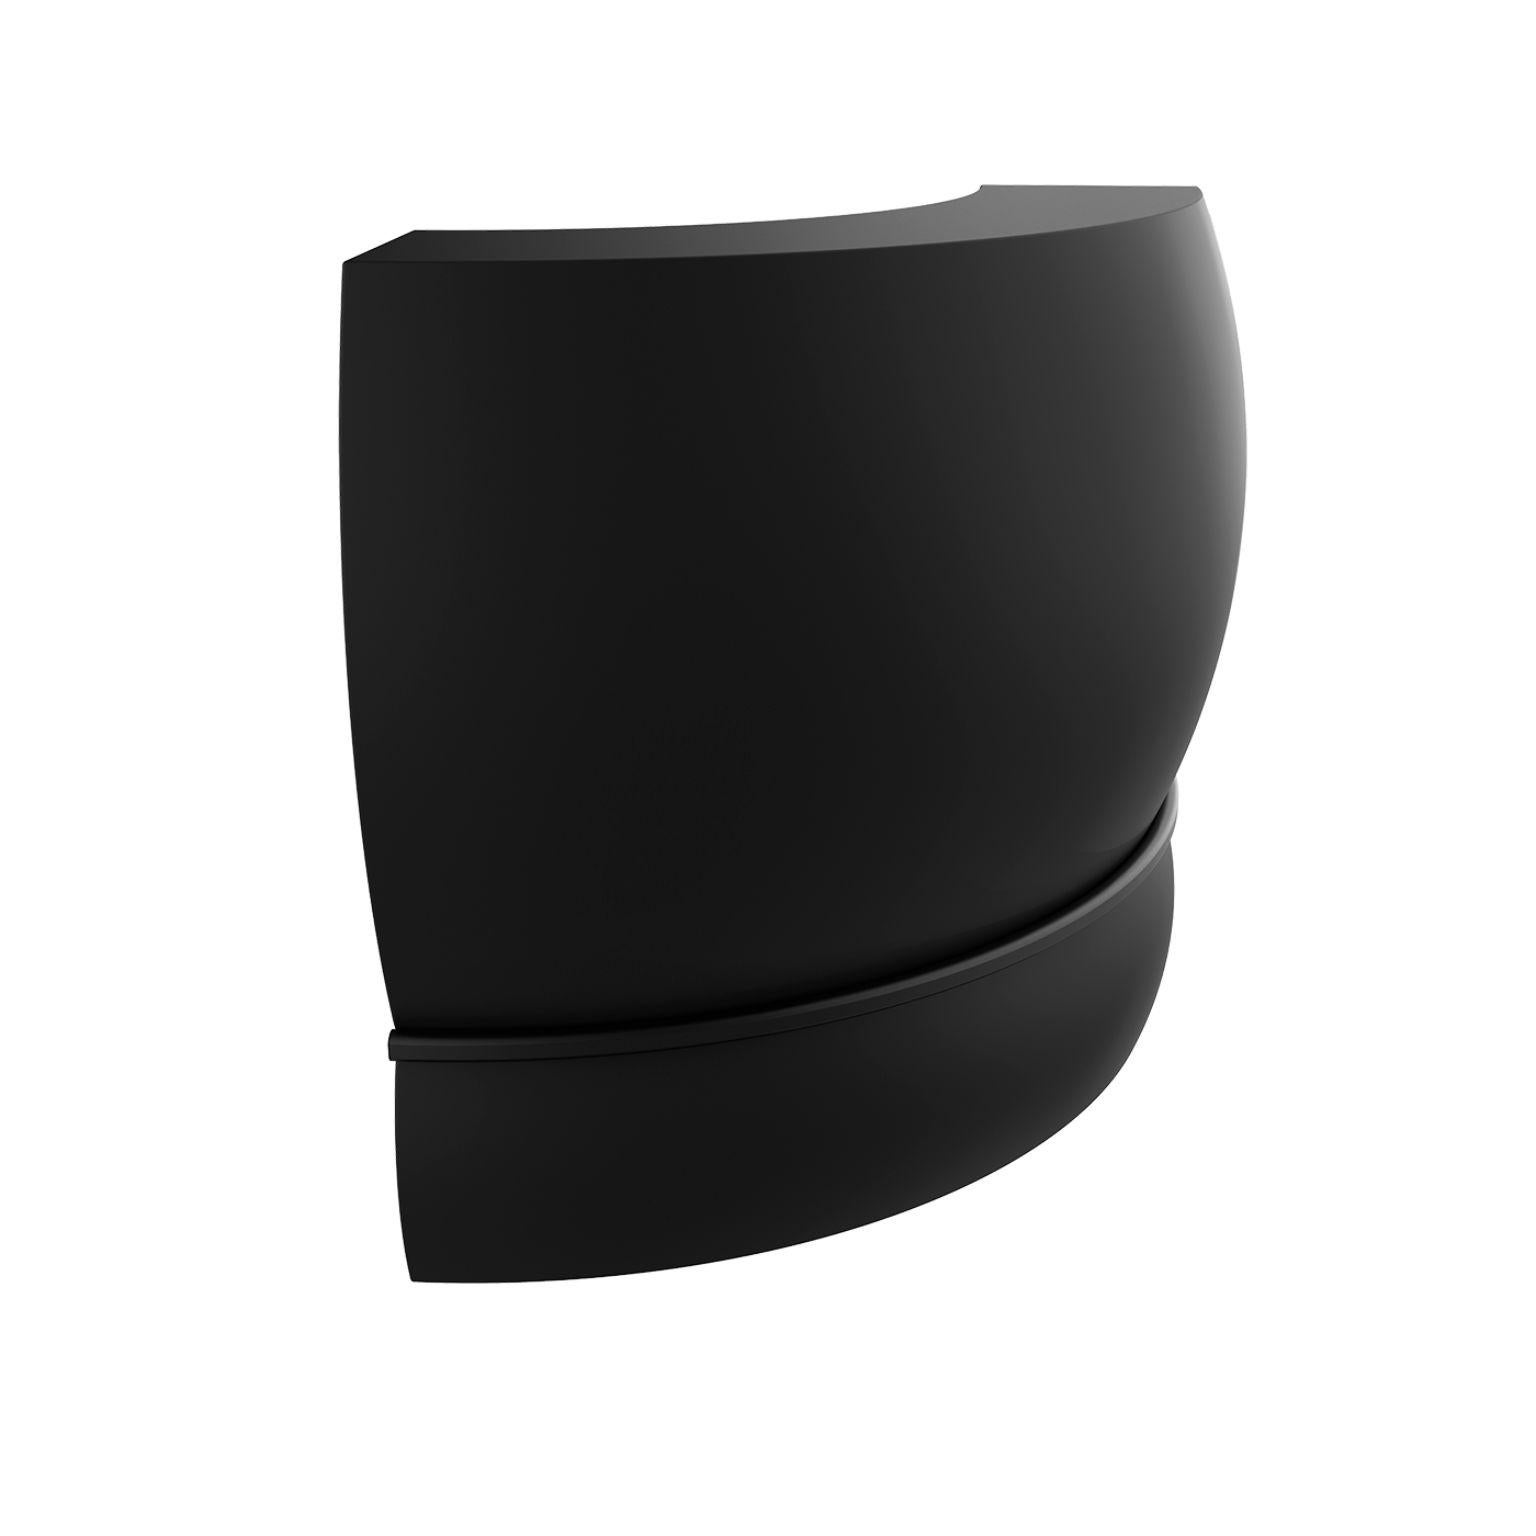 Schwarze geschwungene Spitzenleiste von MOWEE
Abmessungen: T100 x B100 x H115 cm.
MATERIAL: Polyethylen und rostfreier Stahl.
Gewicht: 31 kg.
Auch in verschiedenen Farben und Ausführungen (lackiert, nachträglich beleuchtet) erhältlich.